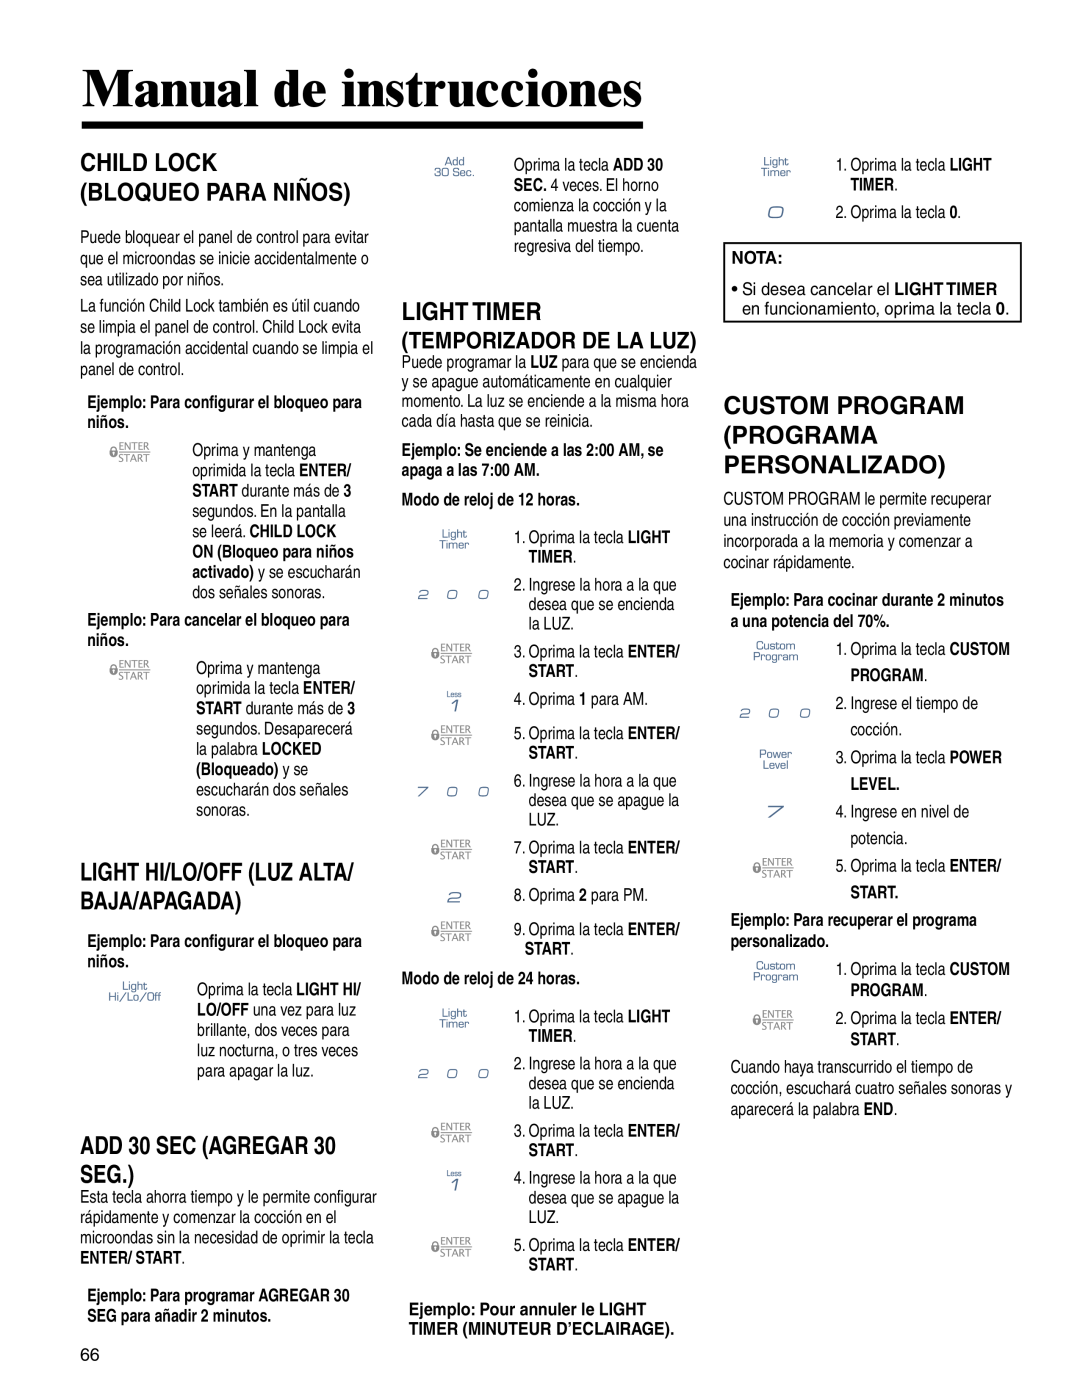 Maytag MMV4205BA Manual de instrucciones, Light Hi/Lo/Off Luz Alta/ Baja/Apagada, Custom Program Programa Personalizado 